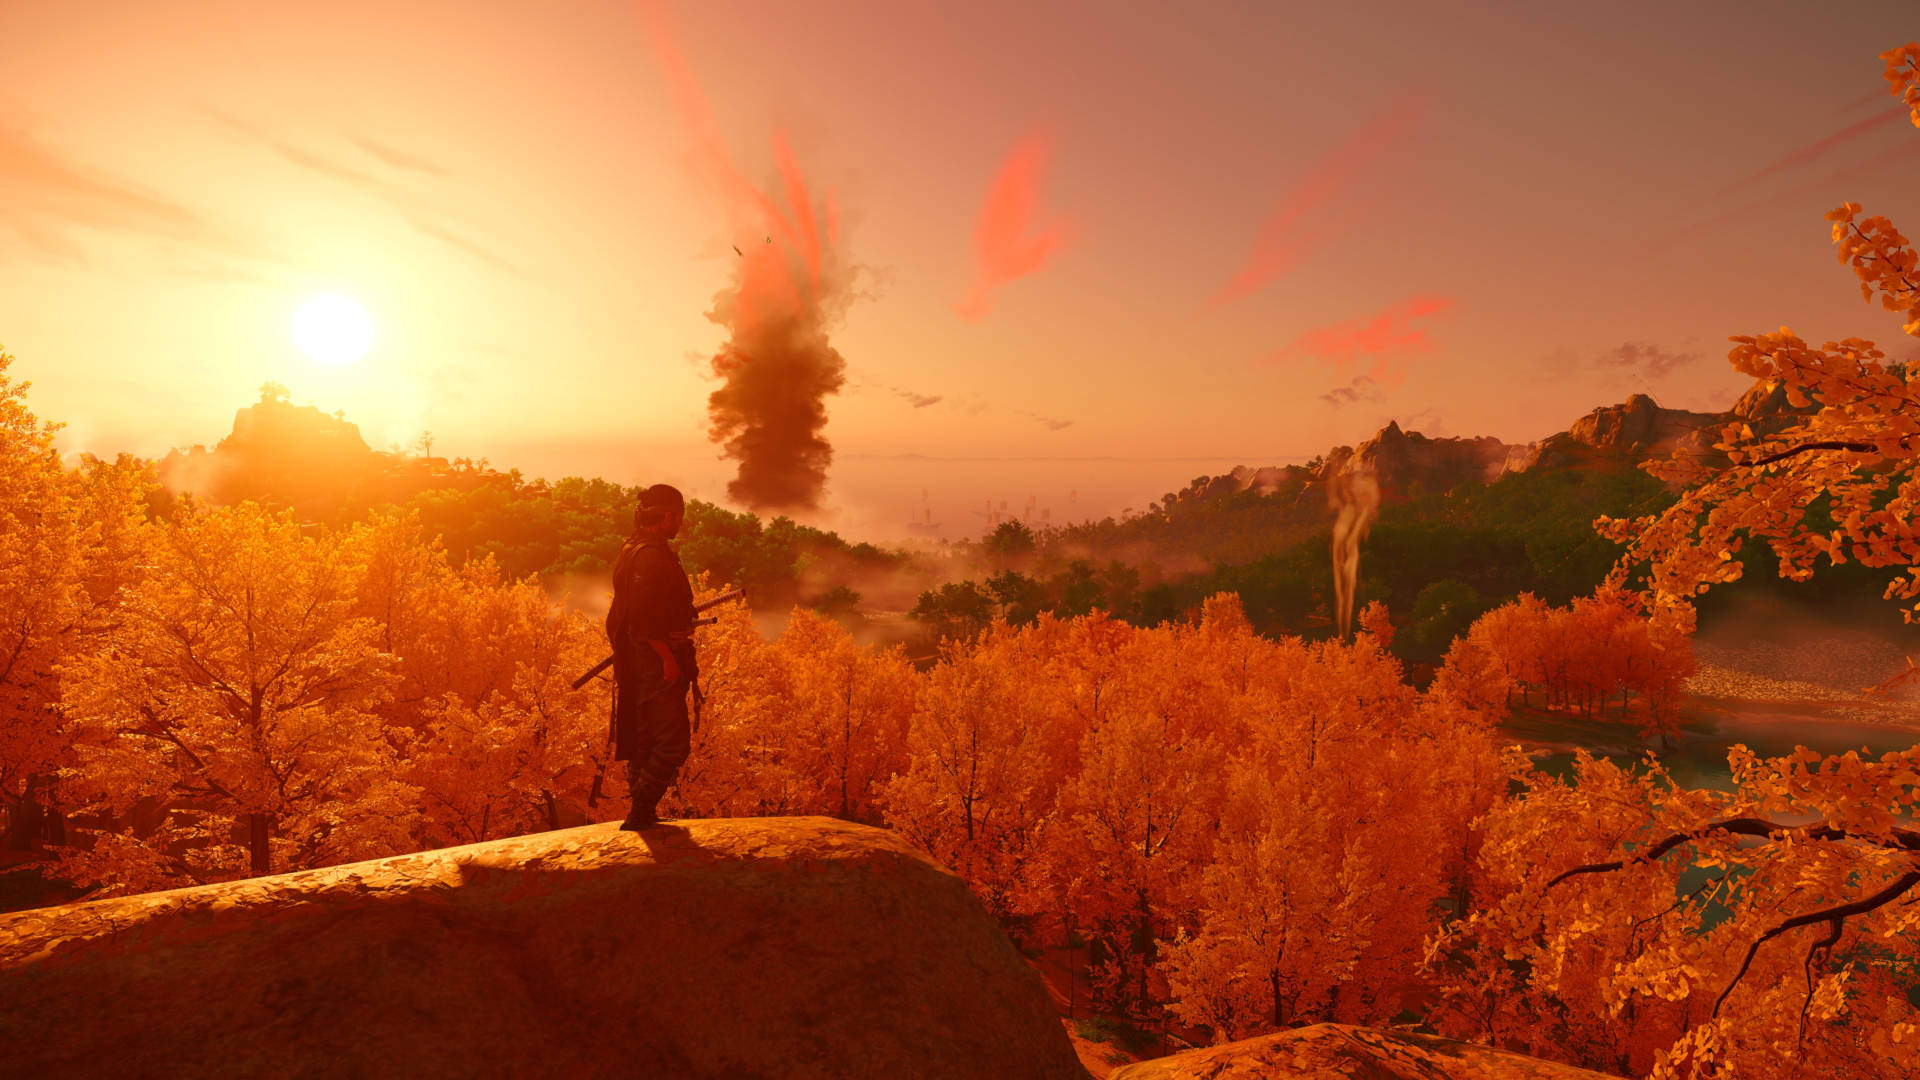 Una captura de pantalla de Ghost of Tsushima, que muestra un paisaje amplio, lleno de árboles y colinas, con el sol poniente proyectando un tono rojo en la vista.